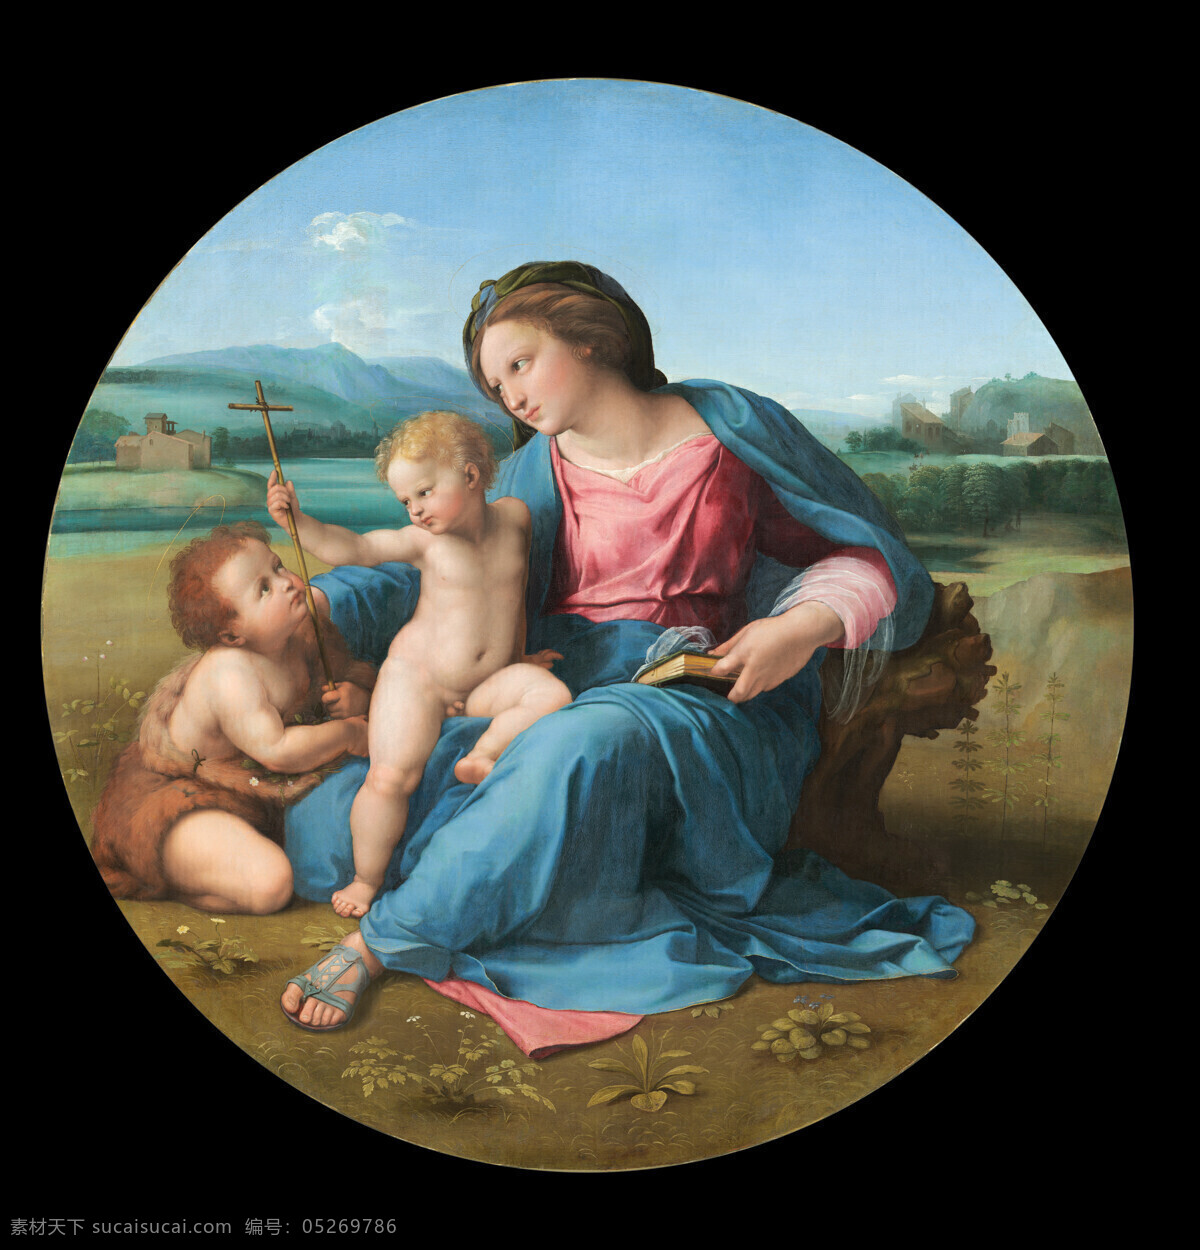 古典油画 绘画书法 文化艺术 油画 宗教油画 本麦当娜 拉斐尔作品 圣母与圣婴 文艺复兴 时代 作品 装饰素材